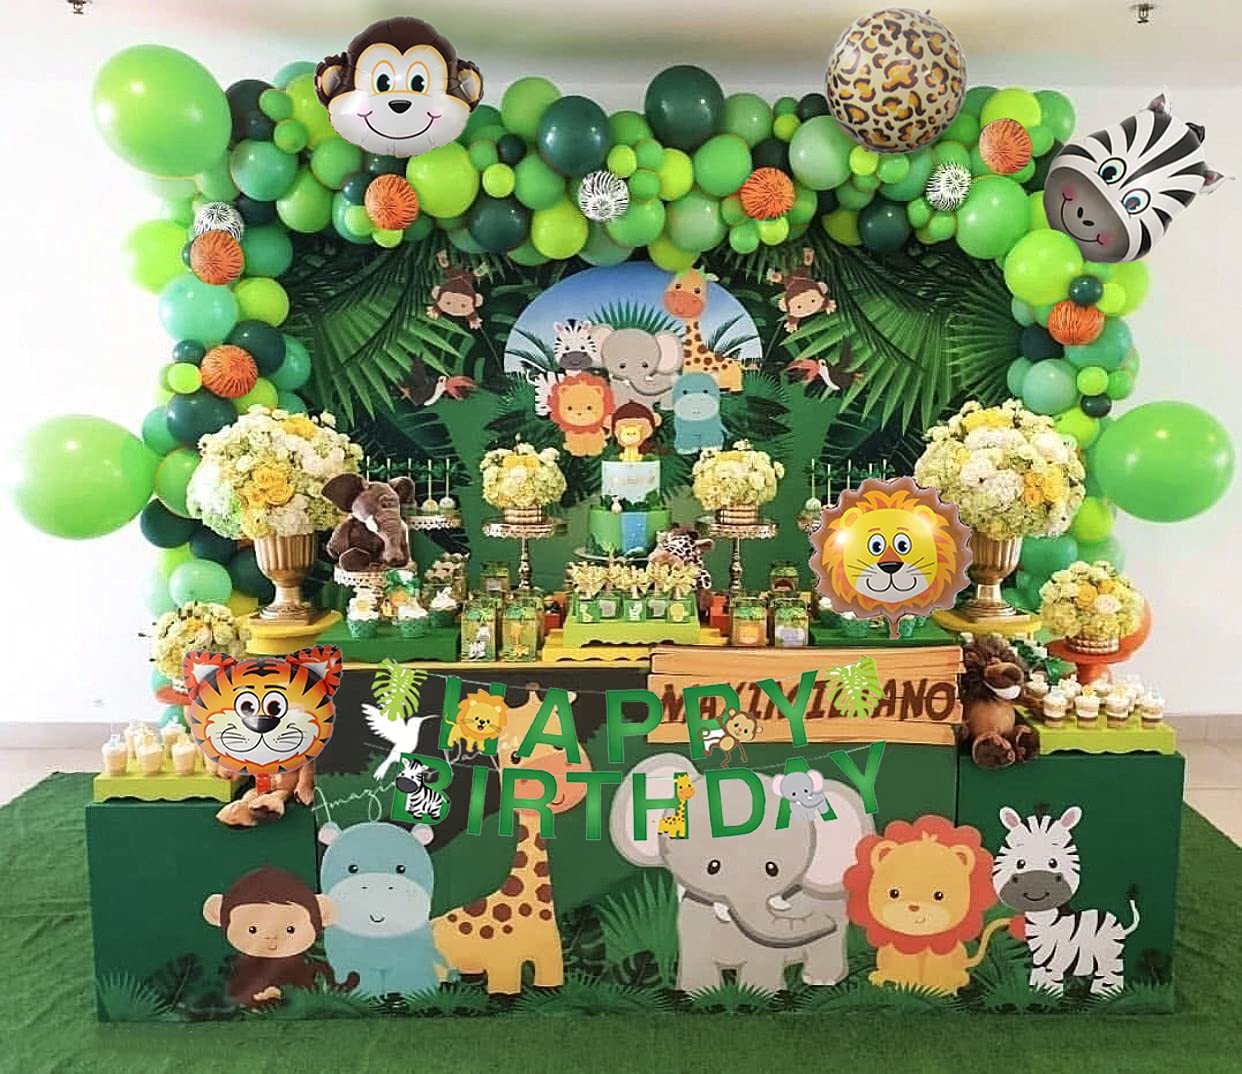 Decoration pour un theme anniversaire enfant de 4 ans